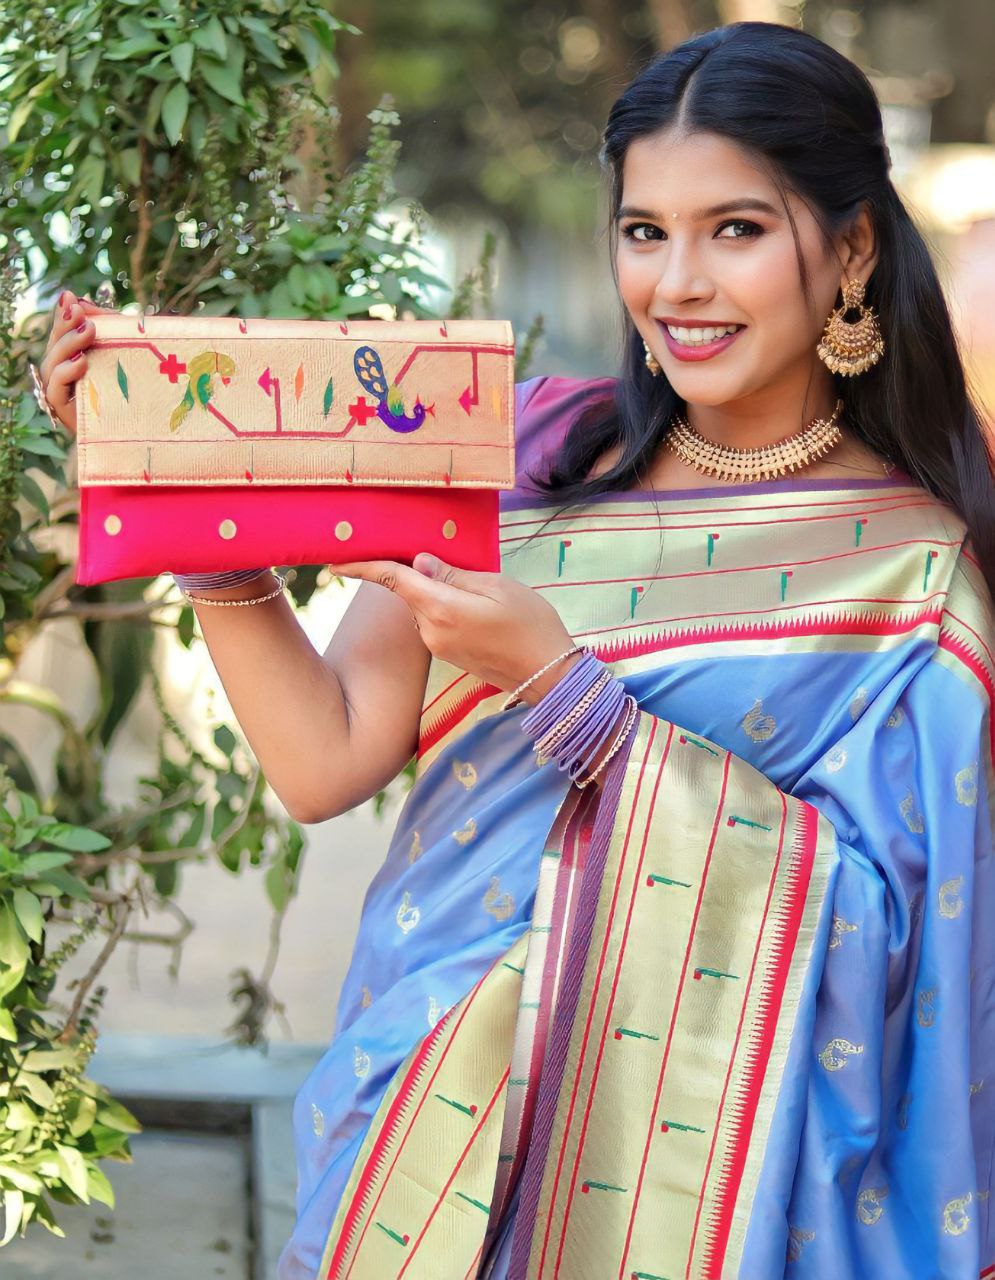 Buy Fancy Shoulder Bag Online In India - Etsy India